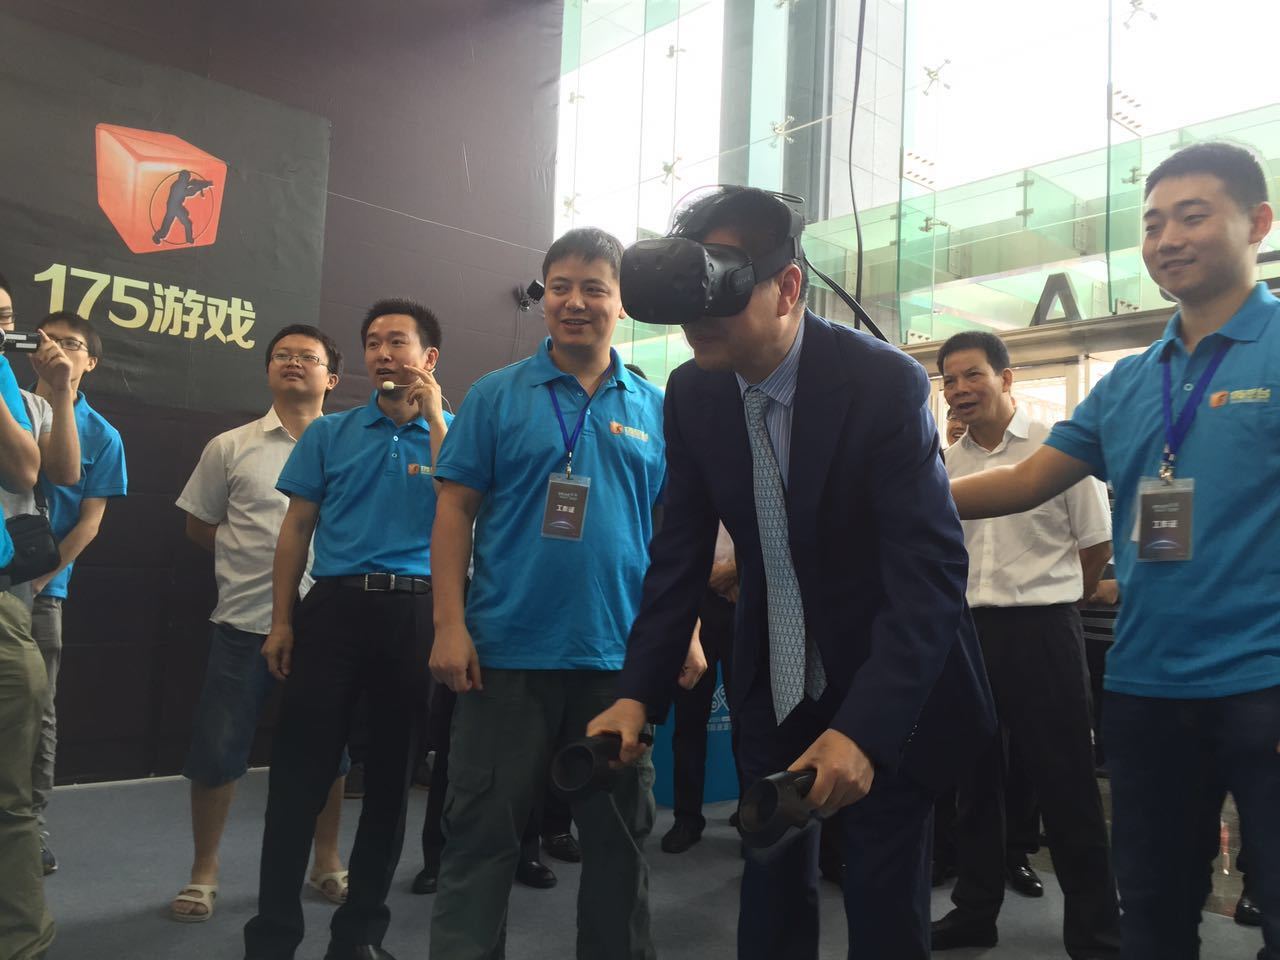 VR深圳双创周 175游戏联袂小小蚂蚁创投亮相